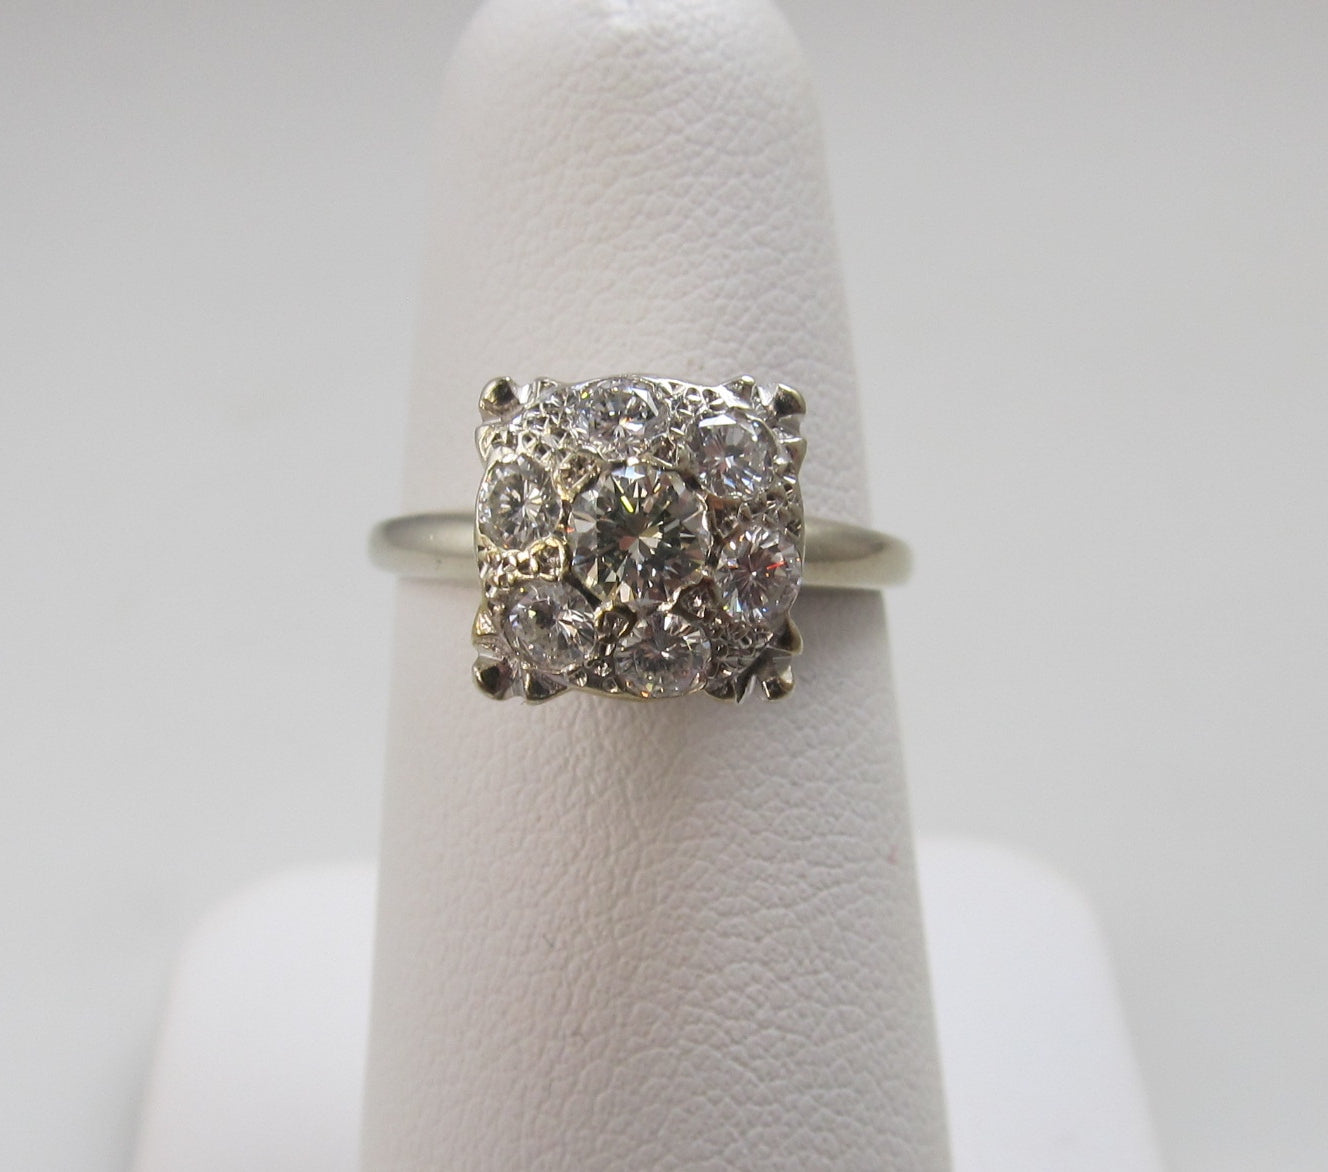 Vintage diamond cluster engagement ring, 14k white gold